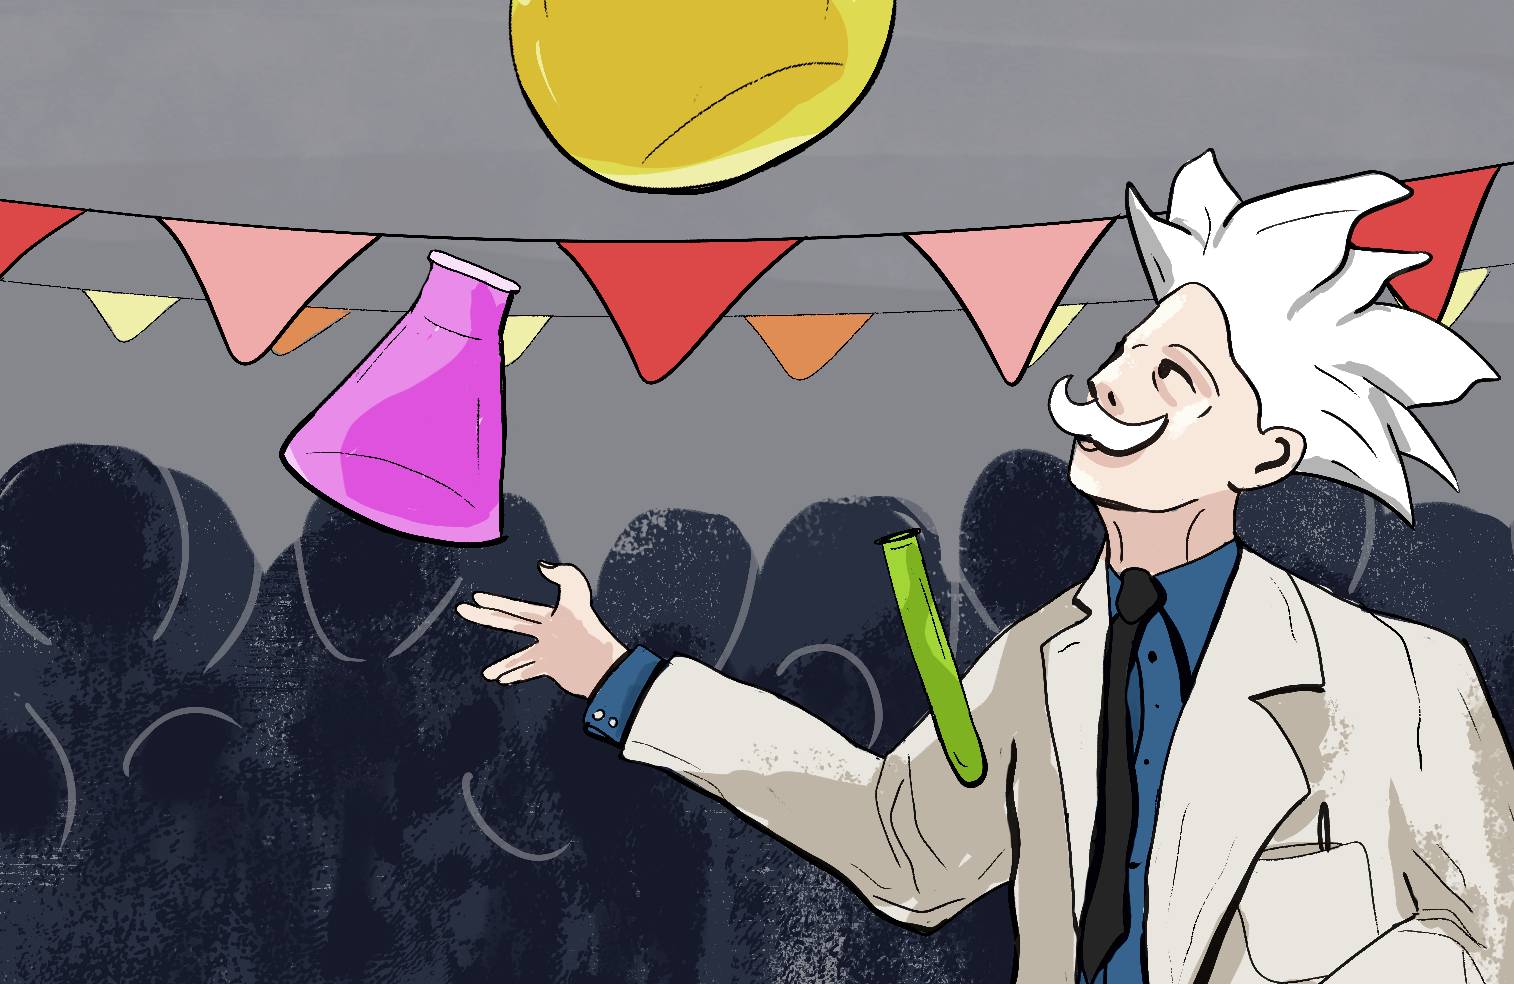 Naukowiec w kitlu laboratoryjnym i bujnymi siwymi włosami żongluje kolorowymi fiolkami